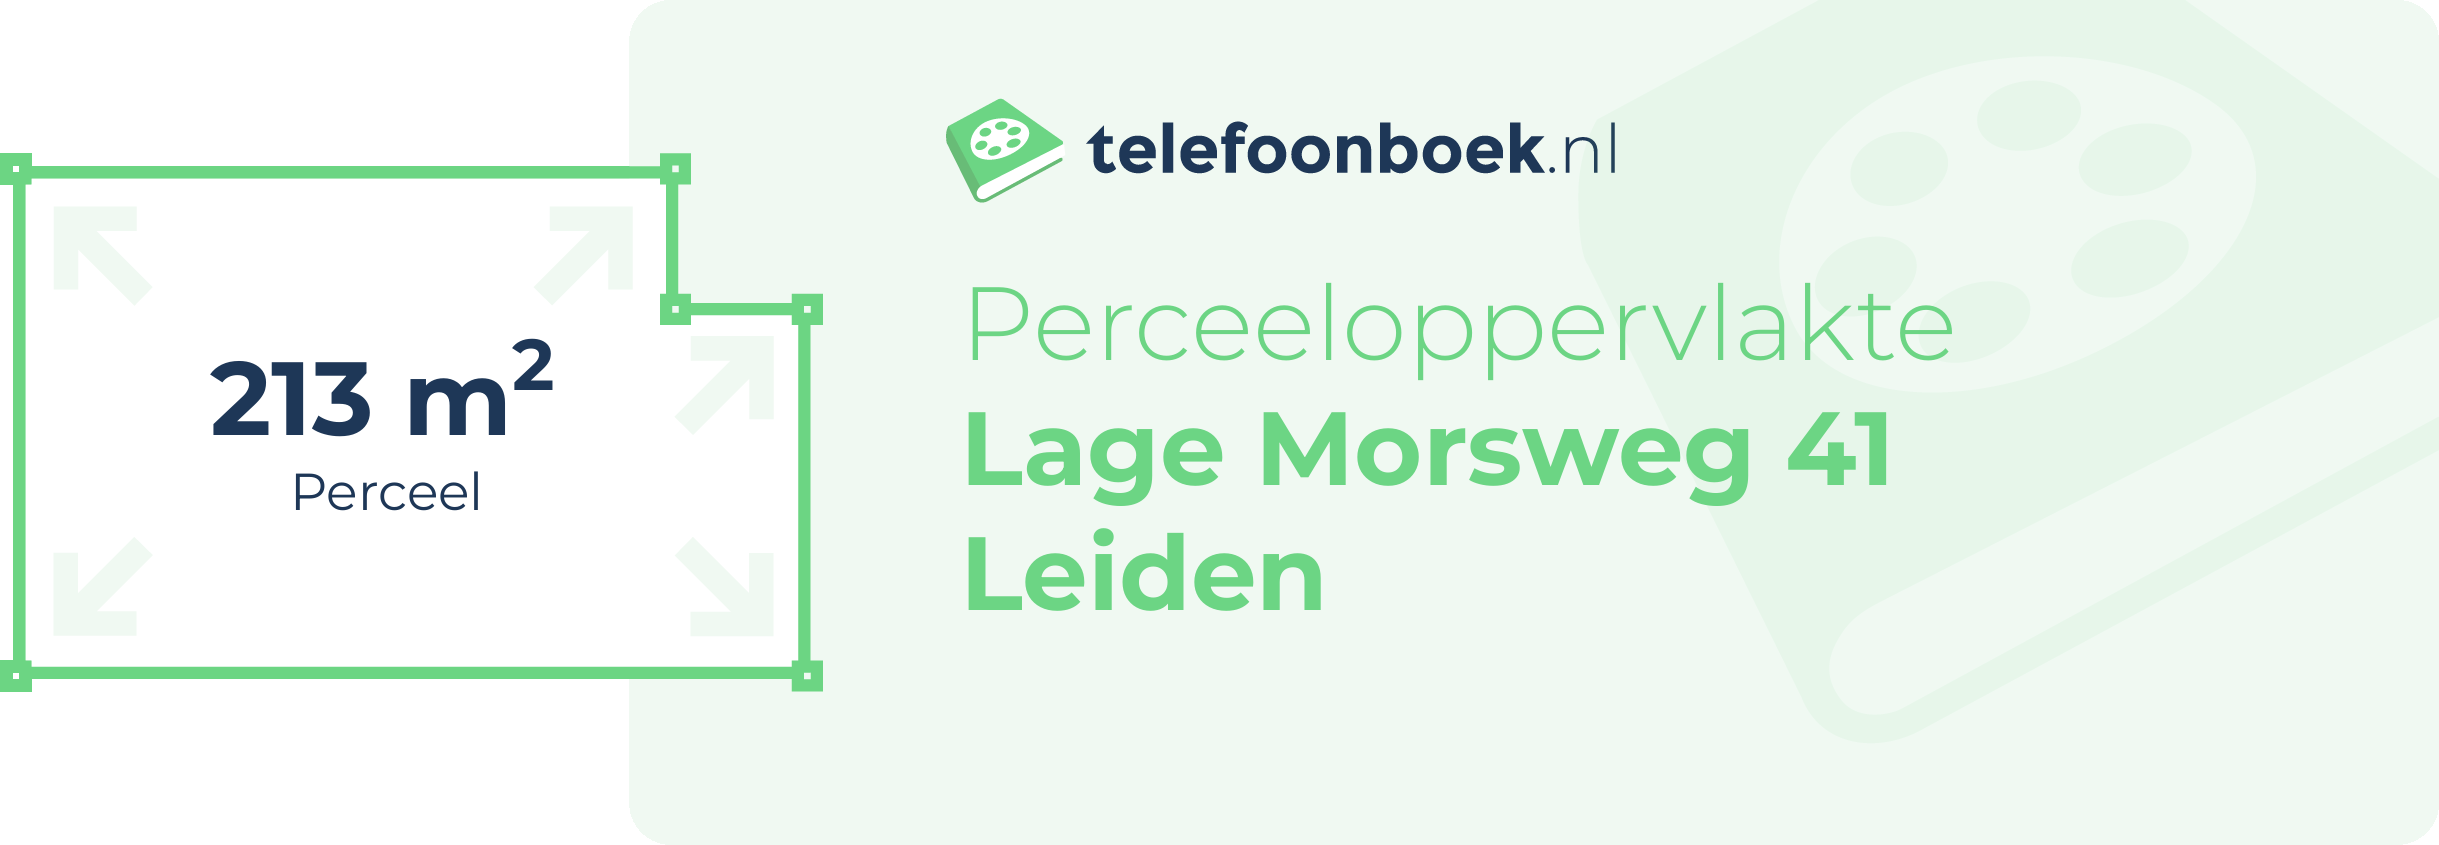 Perceeloppervlakte Lage Morsweg 41 Leiden